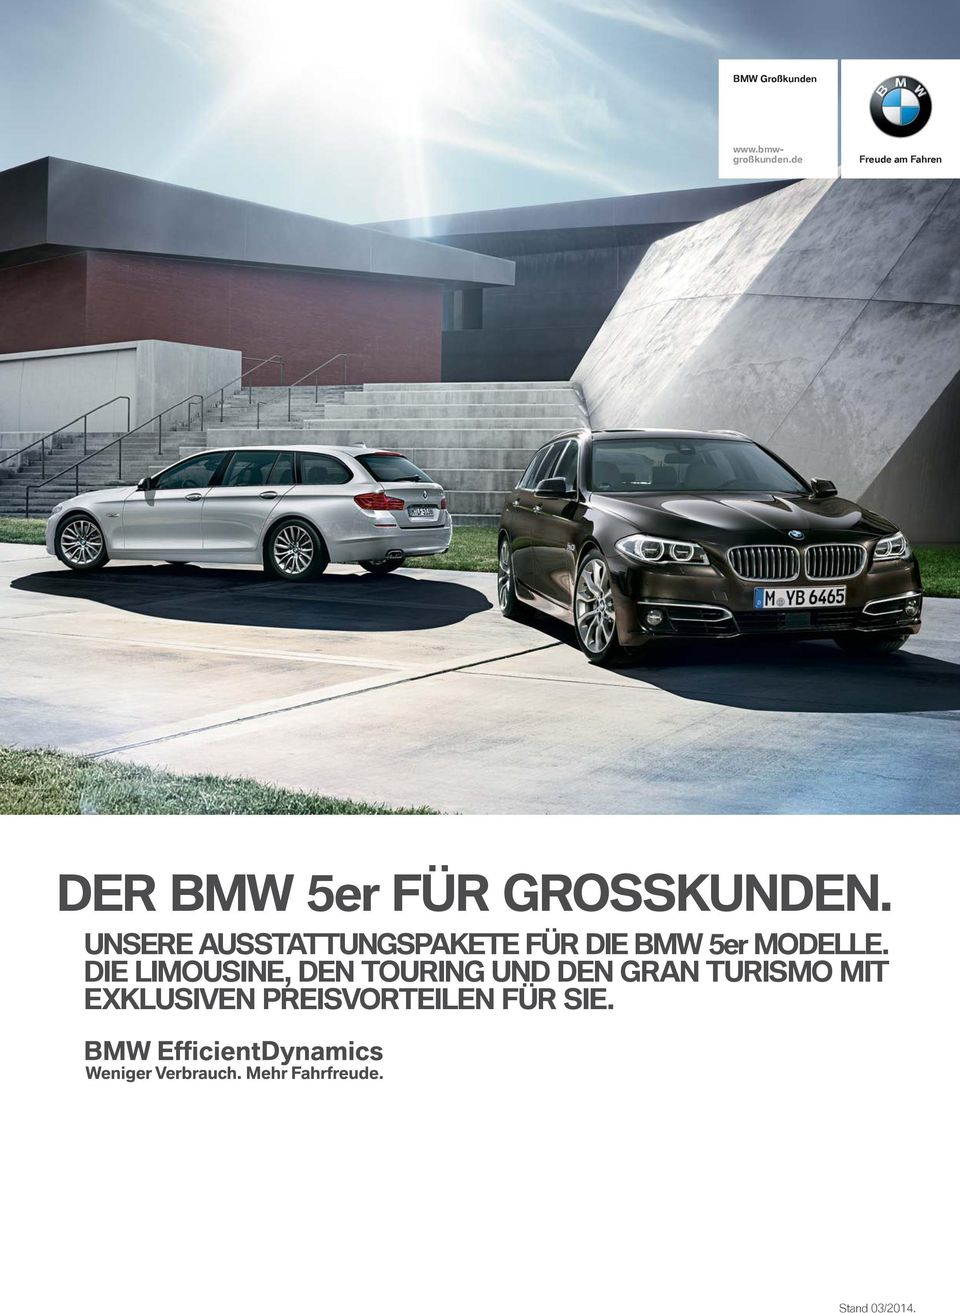 UNSERE AUSSTATTUNGSPAKETE FÜR DIE BMW 5er MODELLE.